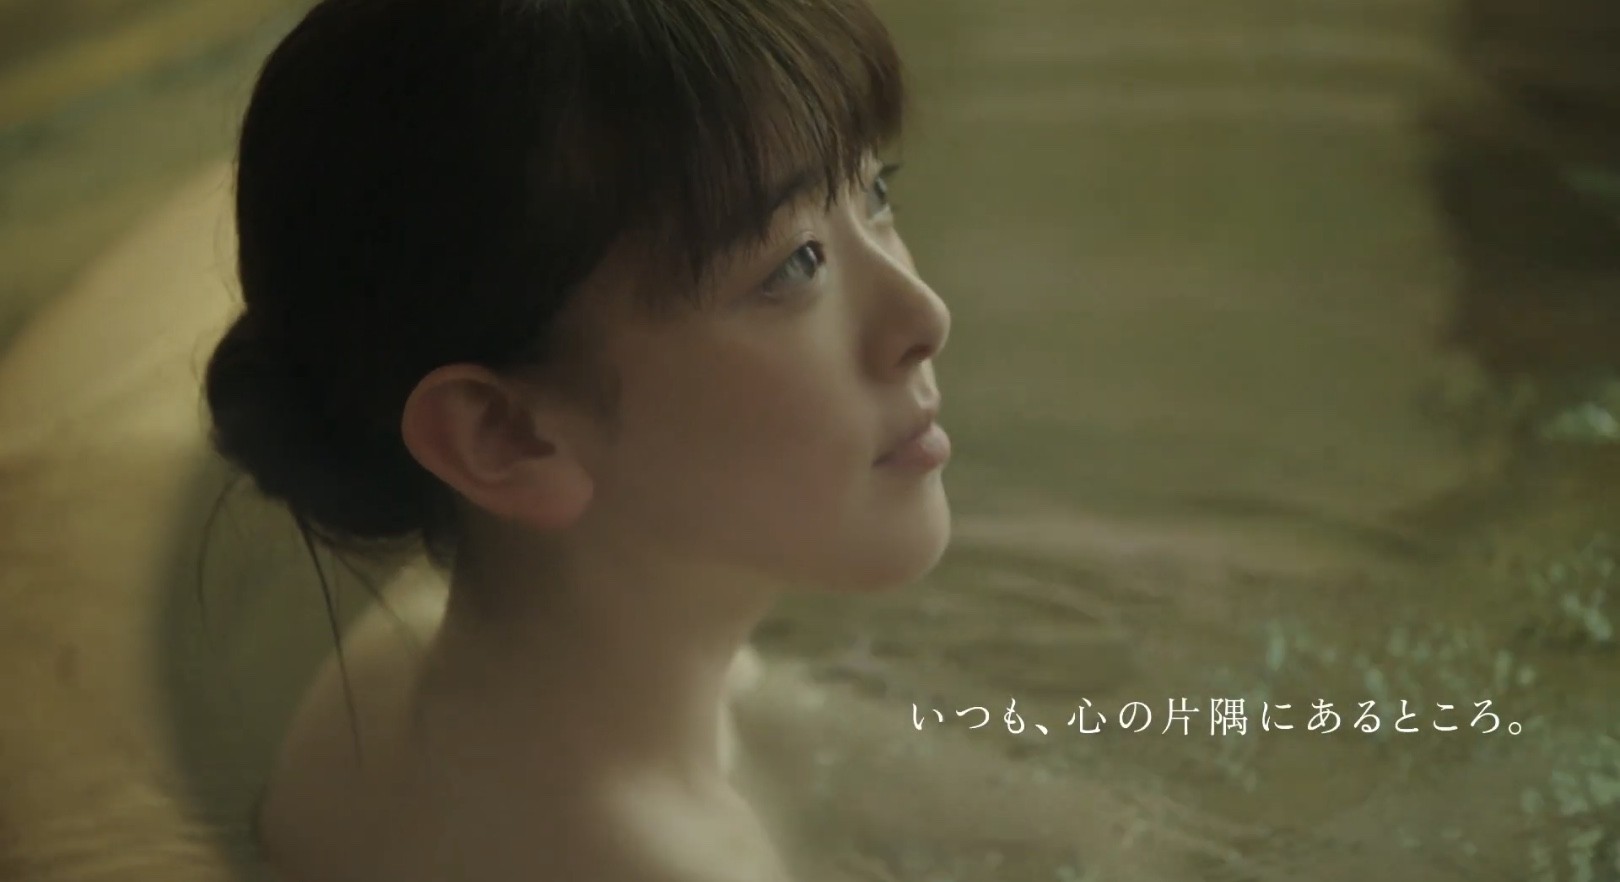 小田急ロマンスカー新cmの女優は水上京香 型の風呂で自然豊かな箱根を満喫